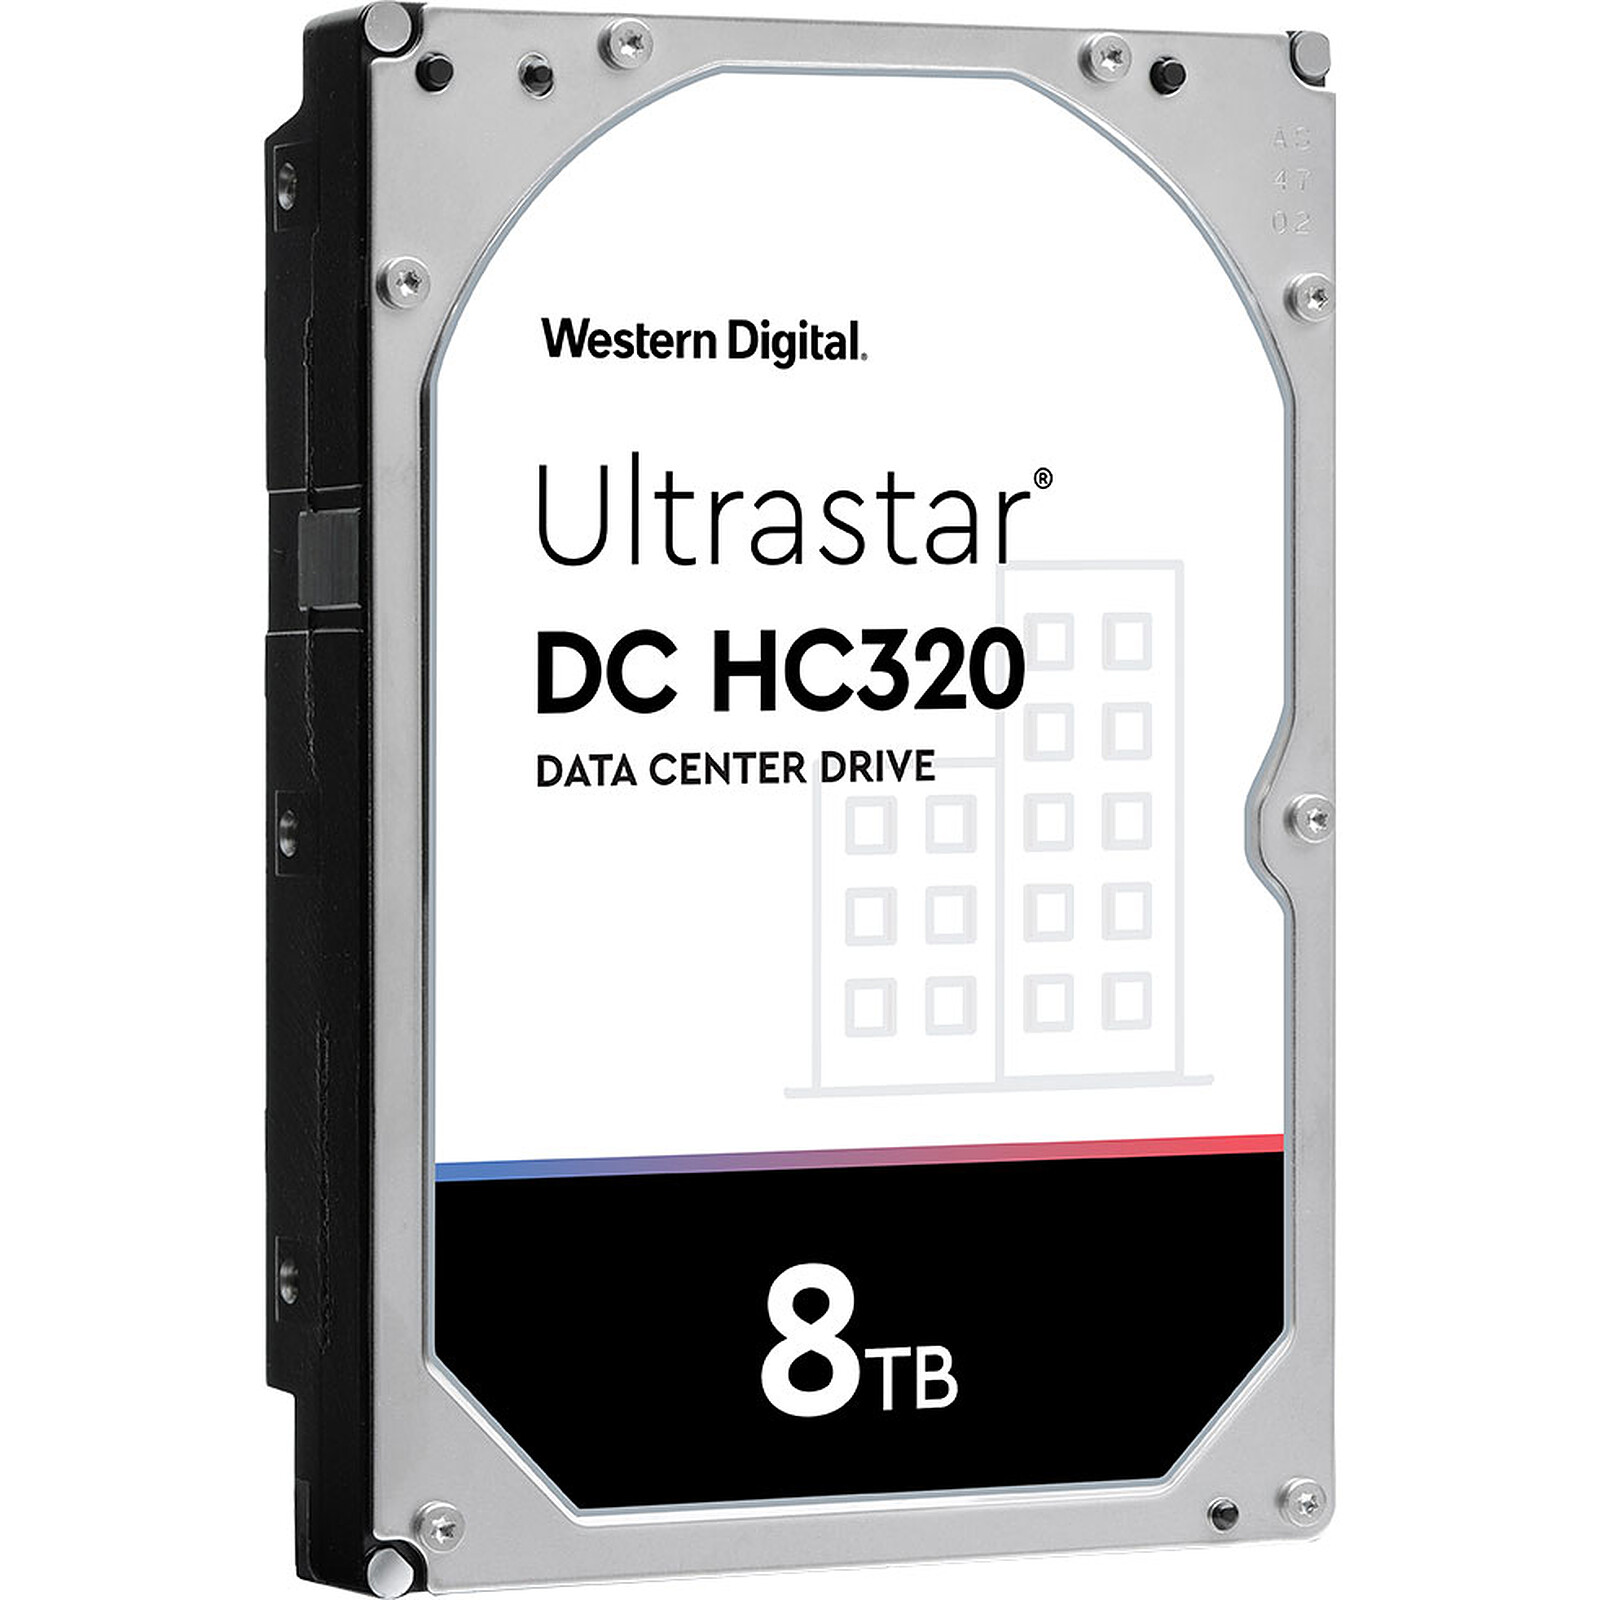 Test du disque dur WD UltraStar DC HC530 de 14 To